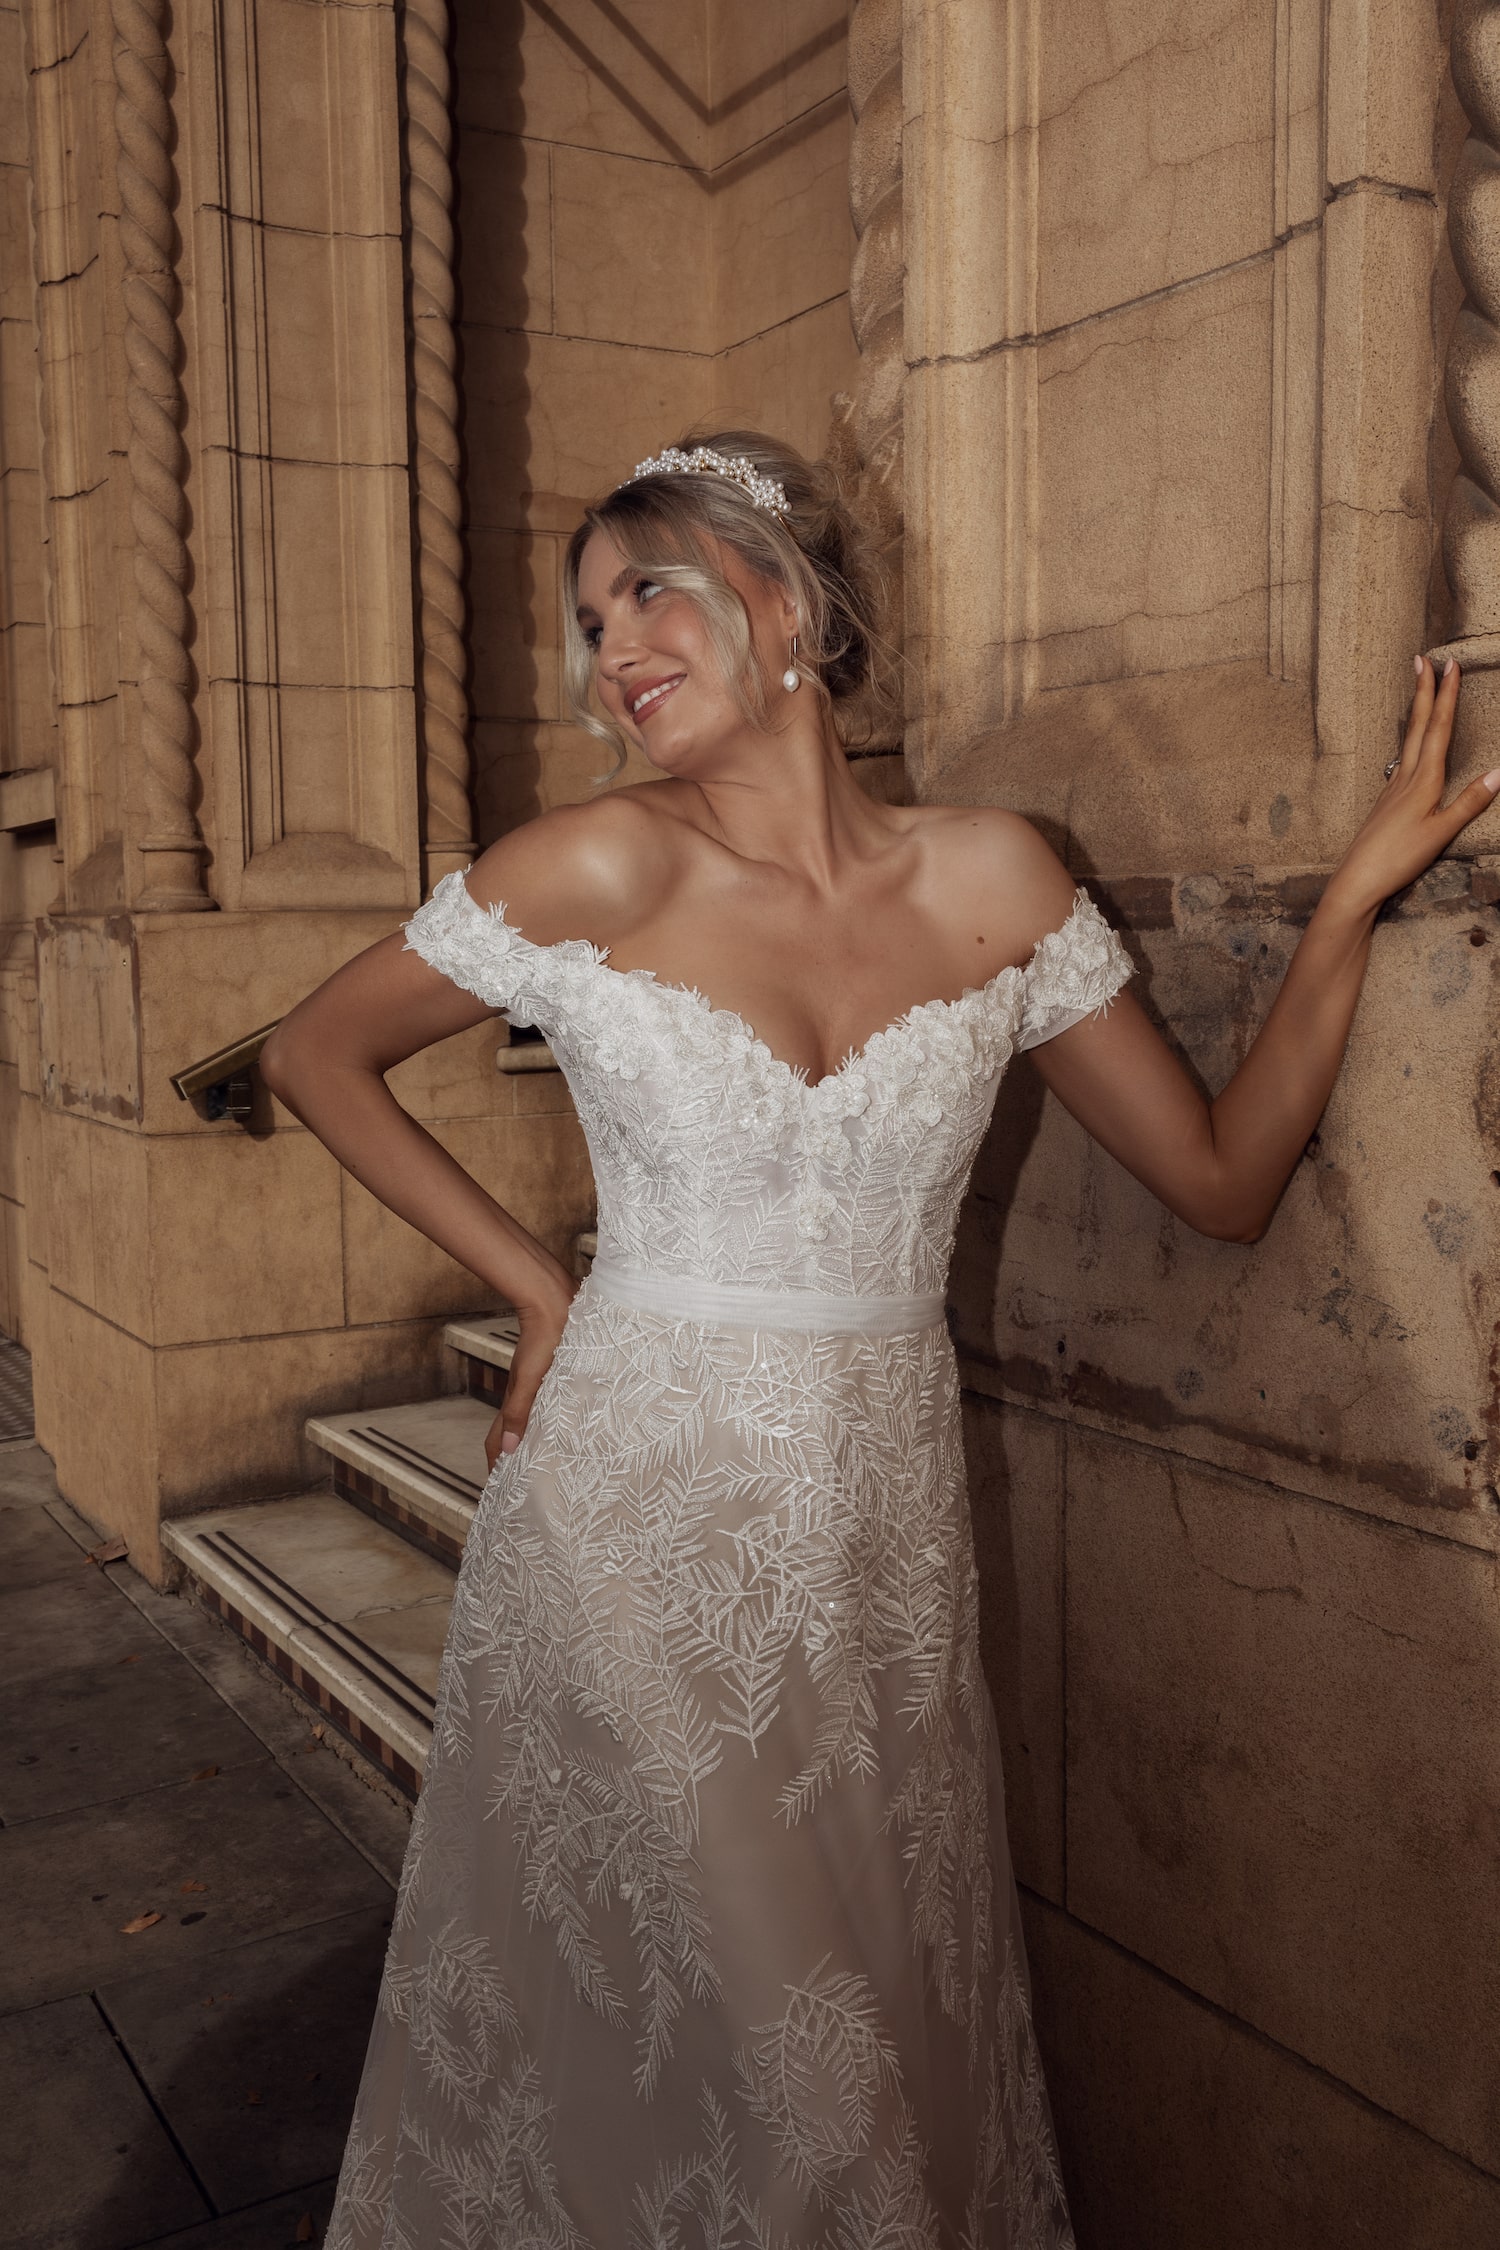 The Via Condotti wedding gown